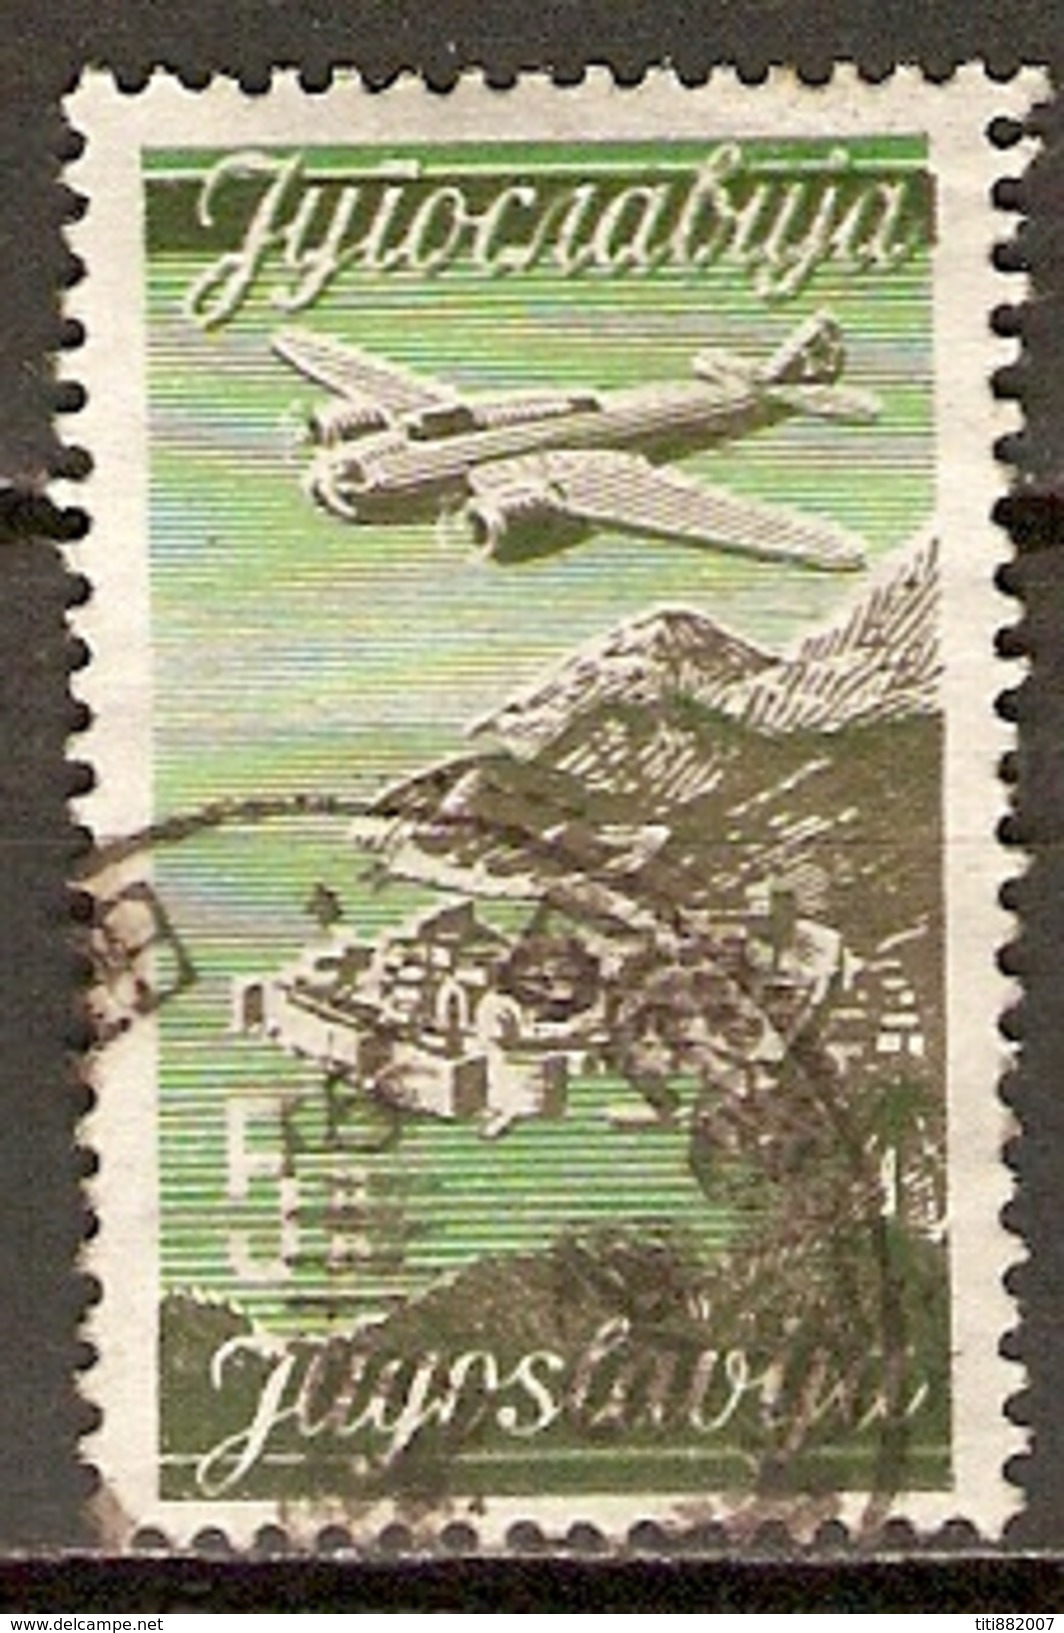 YOUGOSLAVIE     -    Aéro .   1947.   Y&T N° 20 Oblitéré.   Avion. - Luftpost